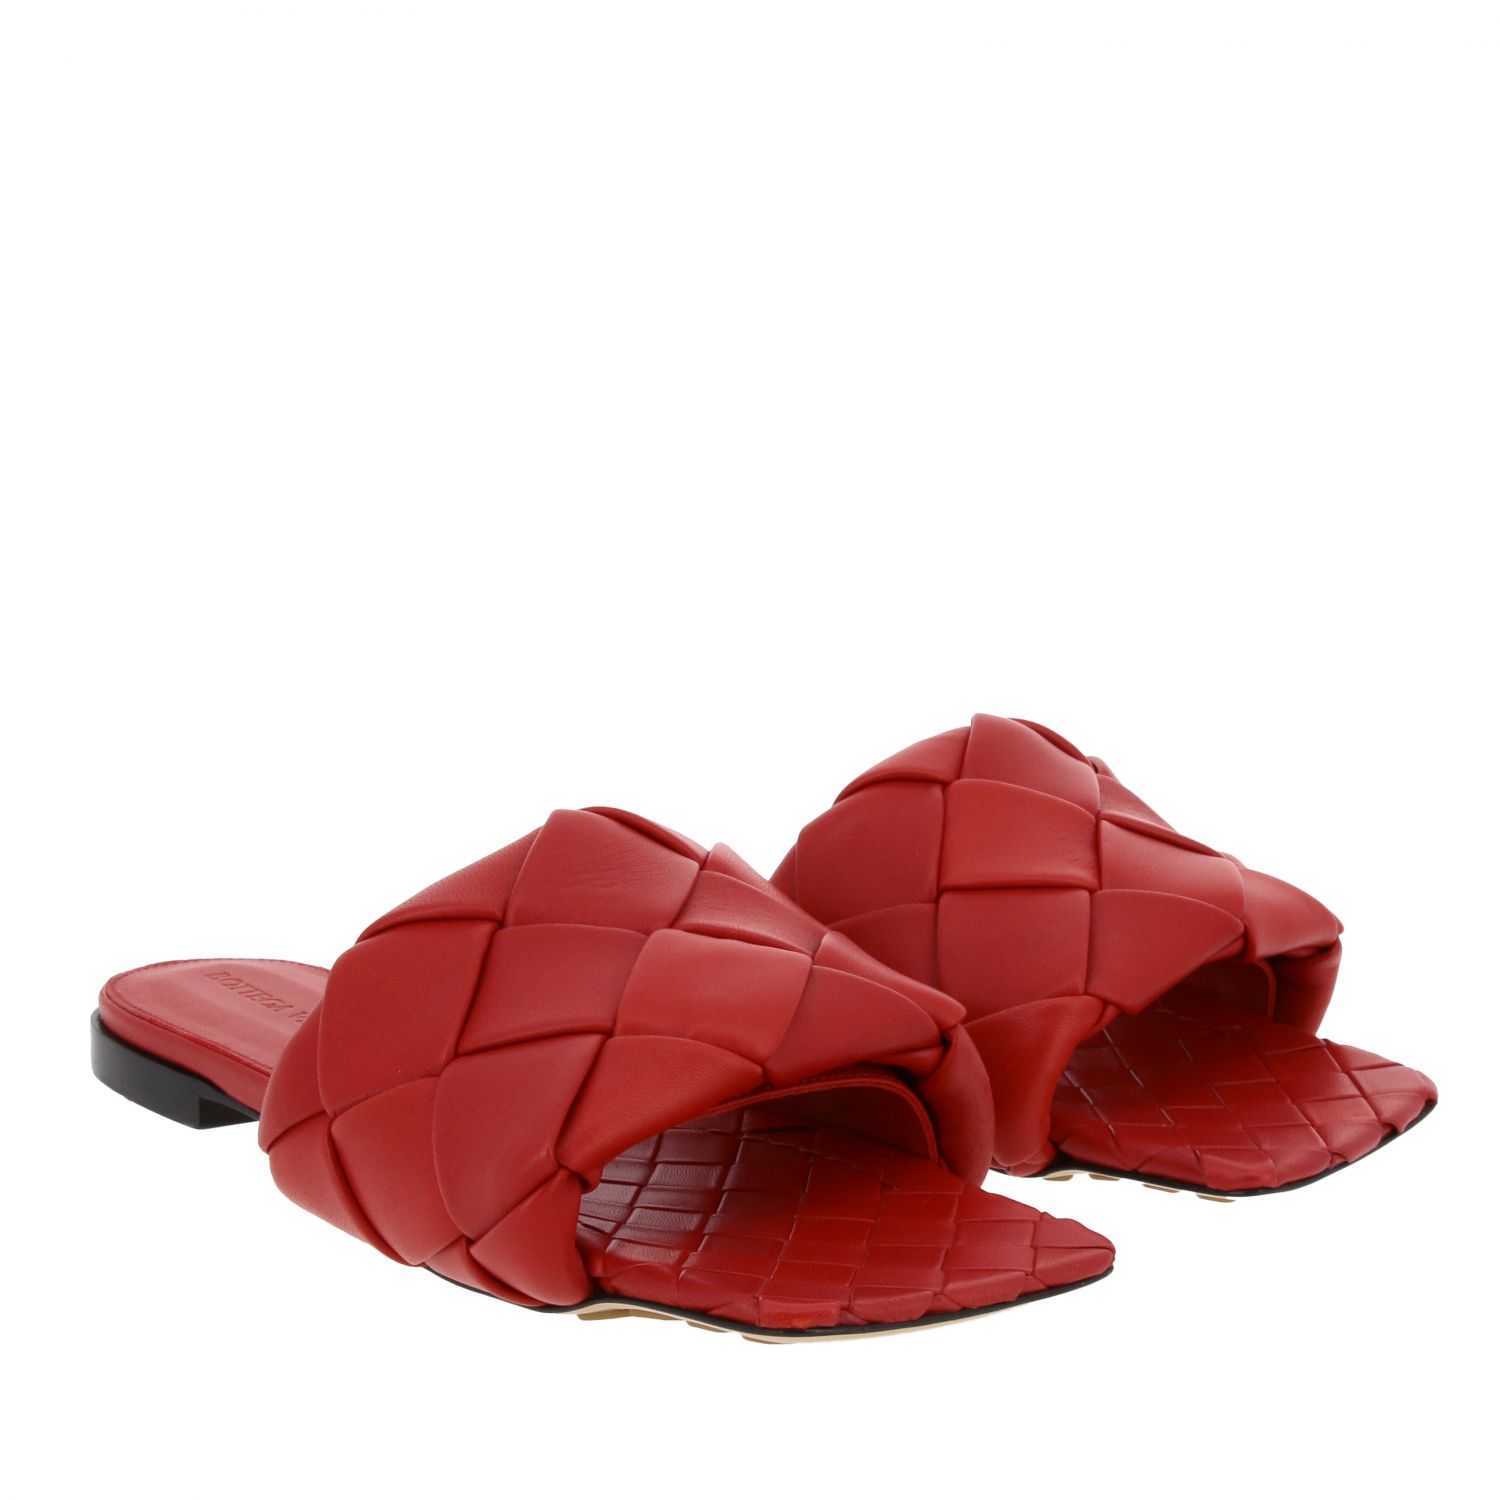 Flat sandals Bottega Veneta: Shoes women Bottega Veneta red 2